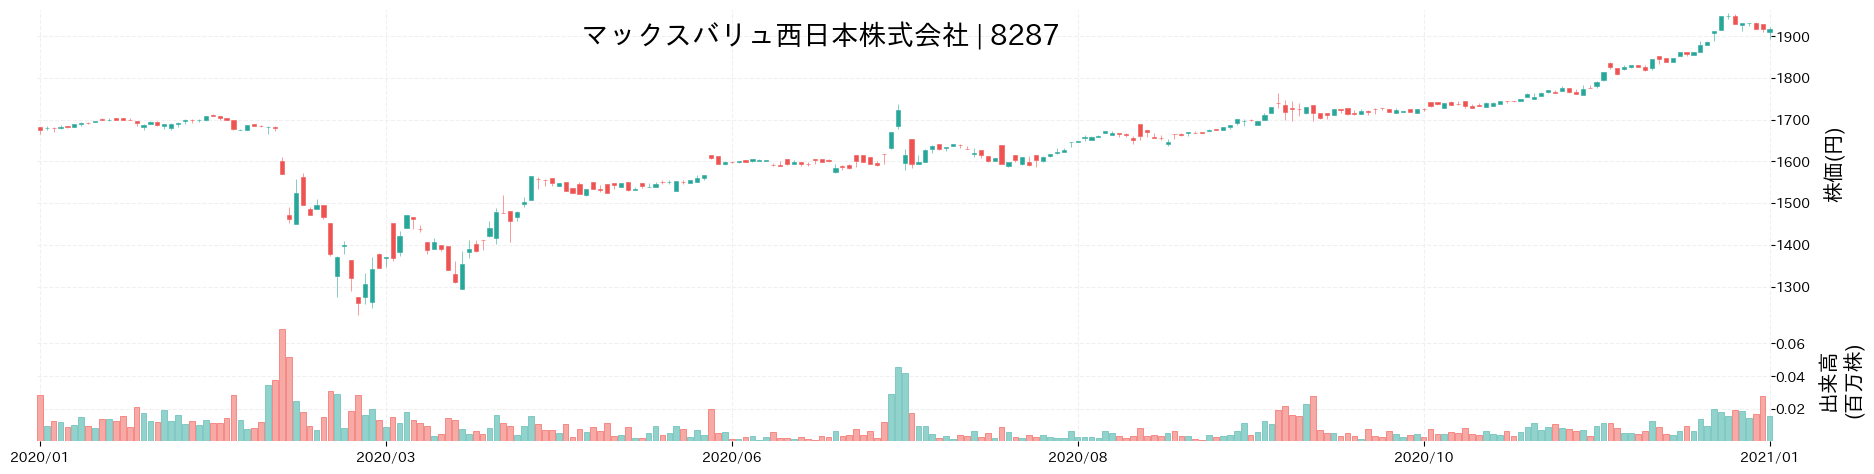 マックスバリュ西日本の株価推移(2020)